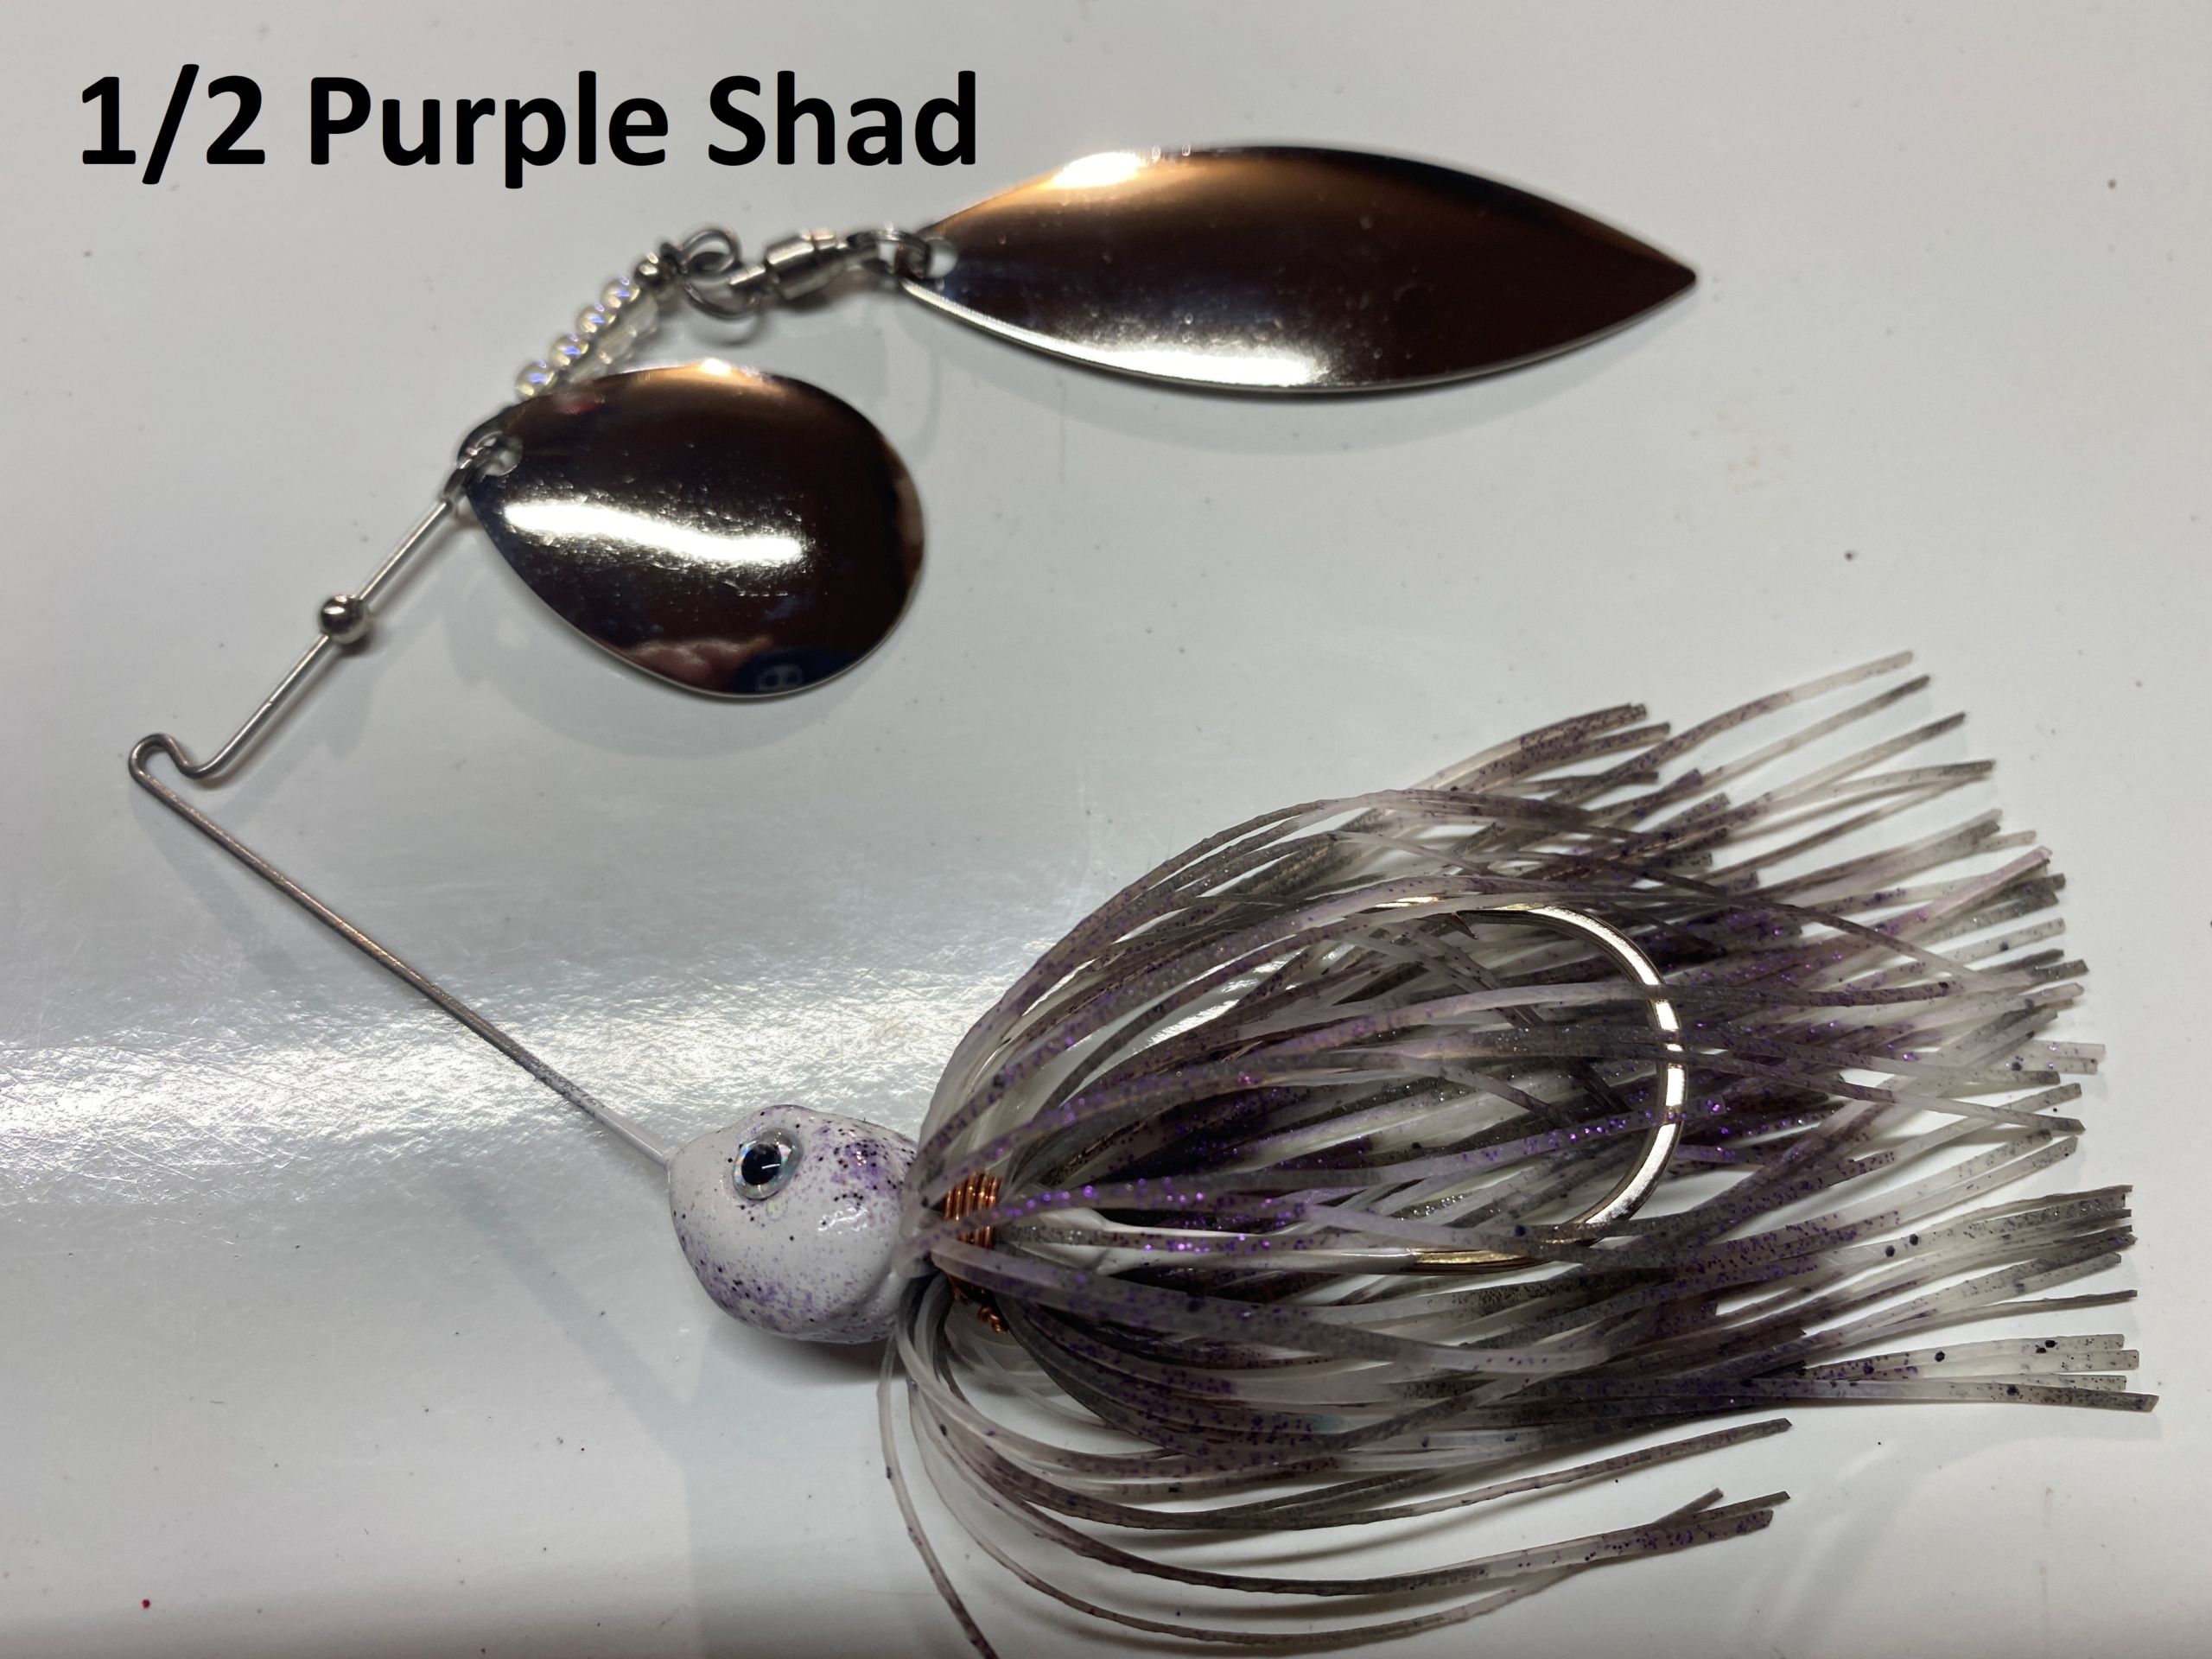 1/2 Purple Shad – Adrenaline Tackle Company 217-502-6880